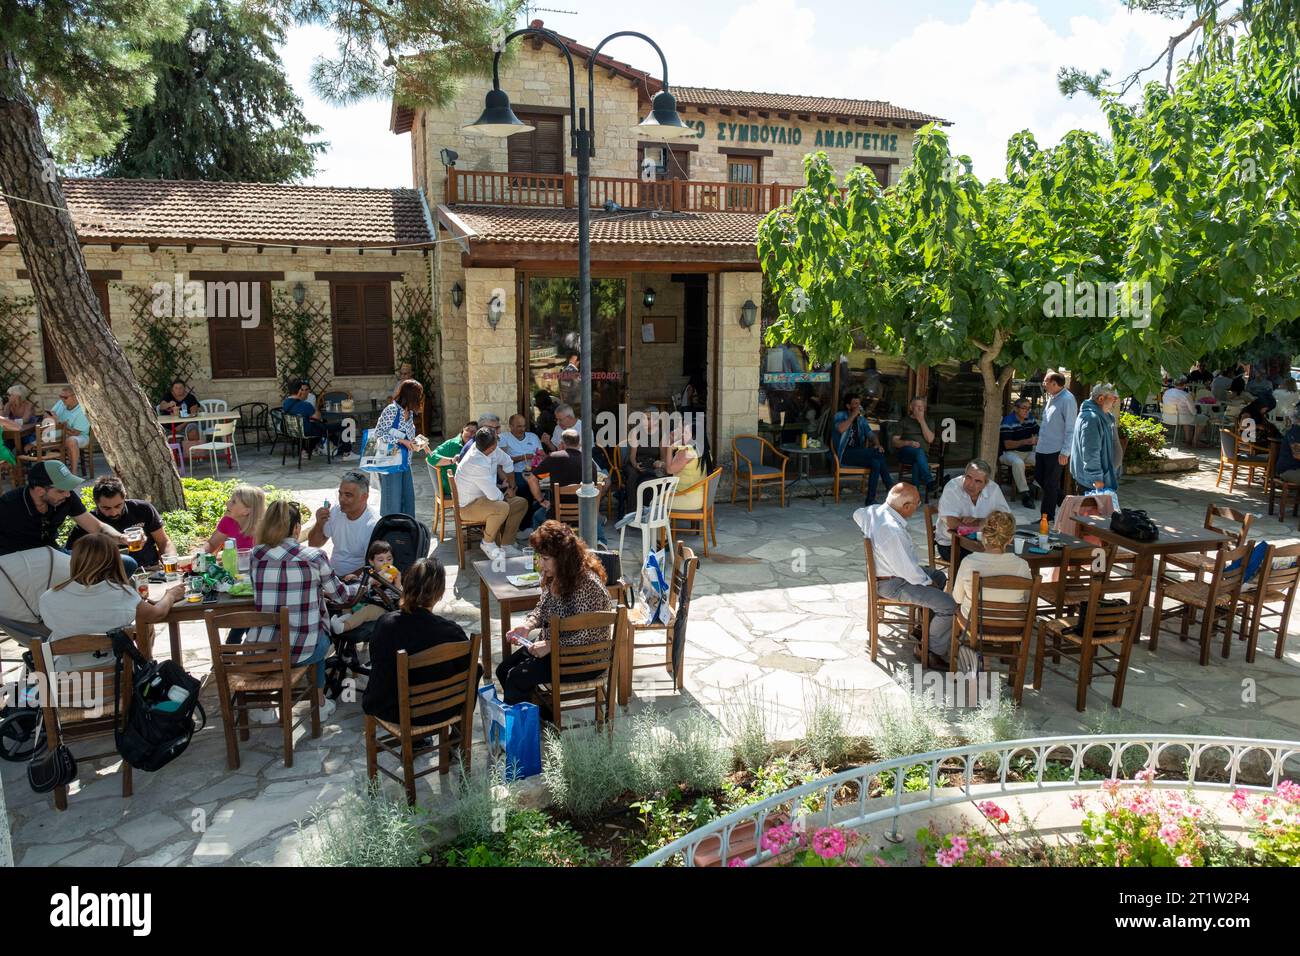 Les gens mangent et boivent dans un restaurant pendant la fête de l'olivier Amargeti, République de Chypre. Banque D'Images